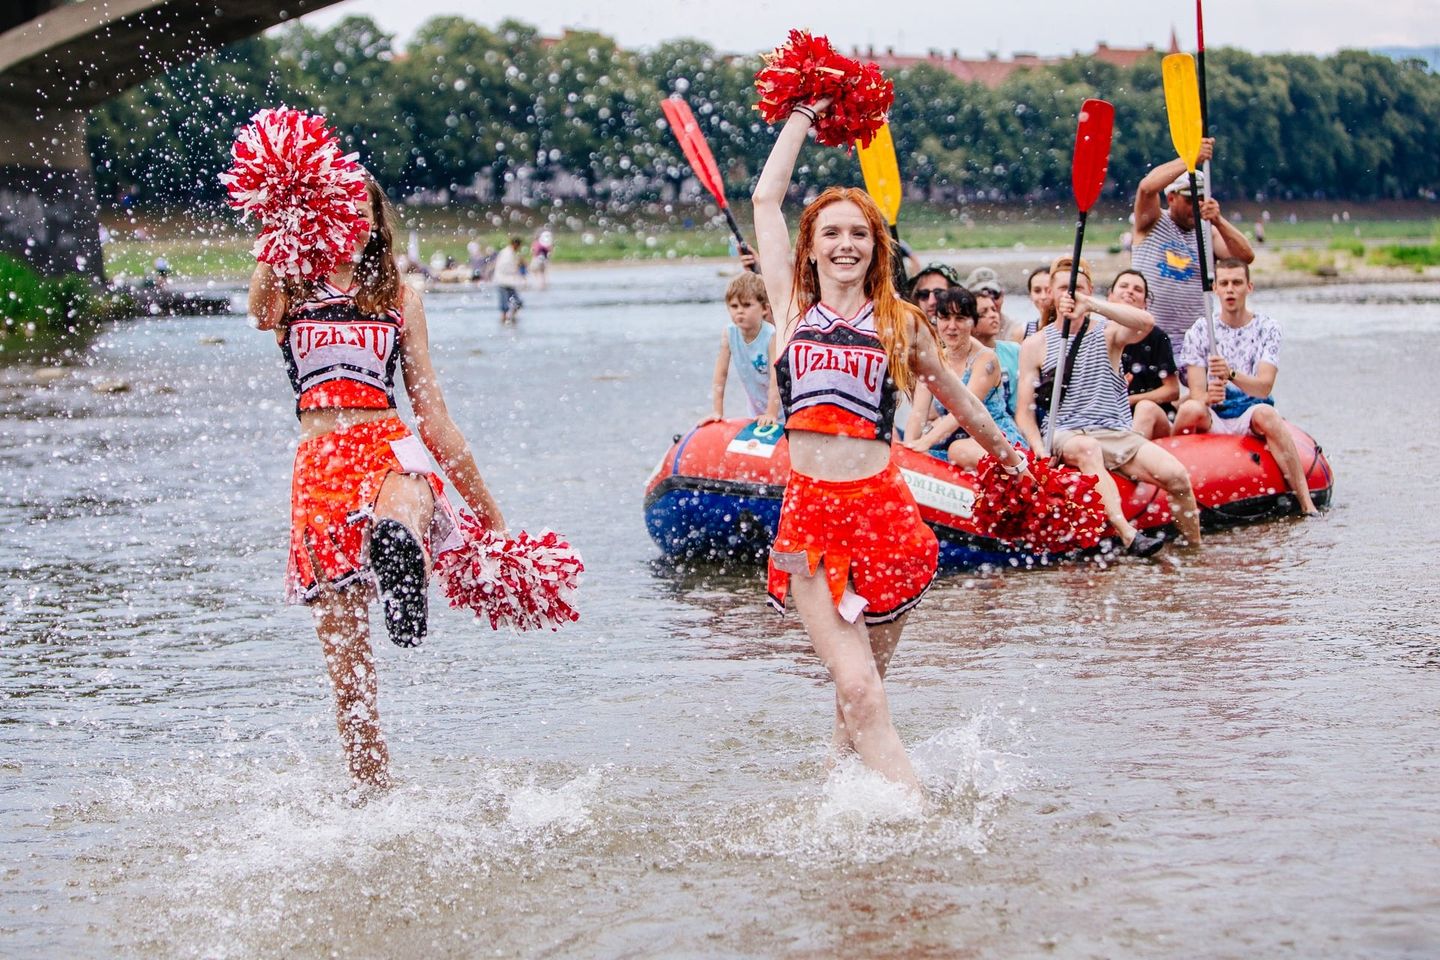 25 липня відбудеться “Ужгородська РЕГАТА” – веселе спортивне змагання, сплав по річці Уж на плавзасобах різної конструкції.